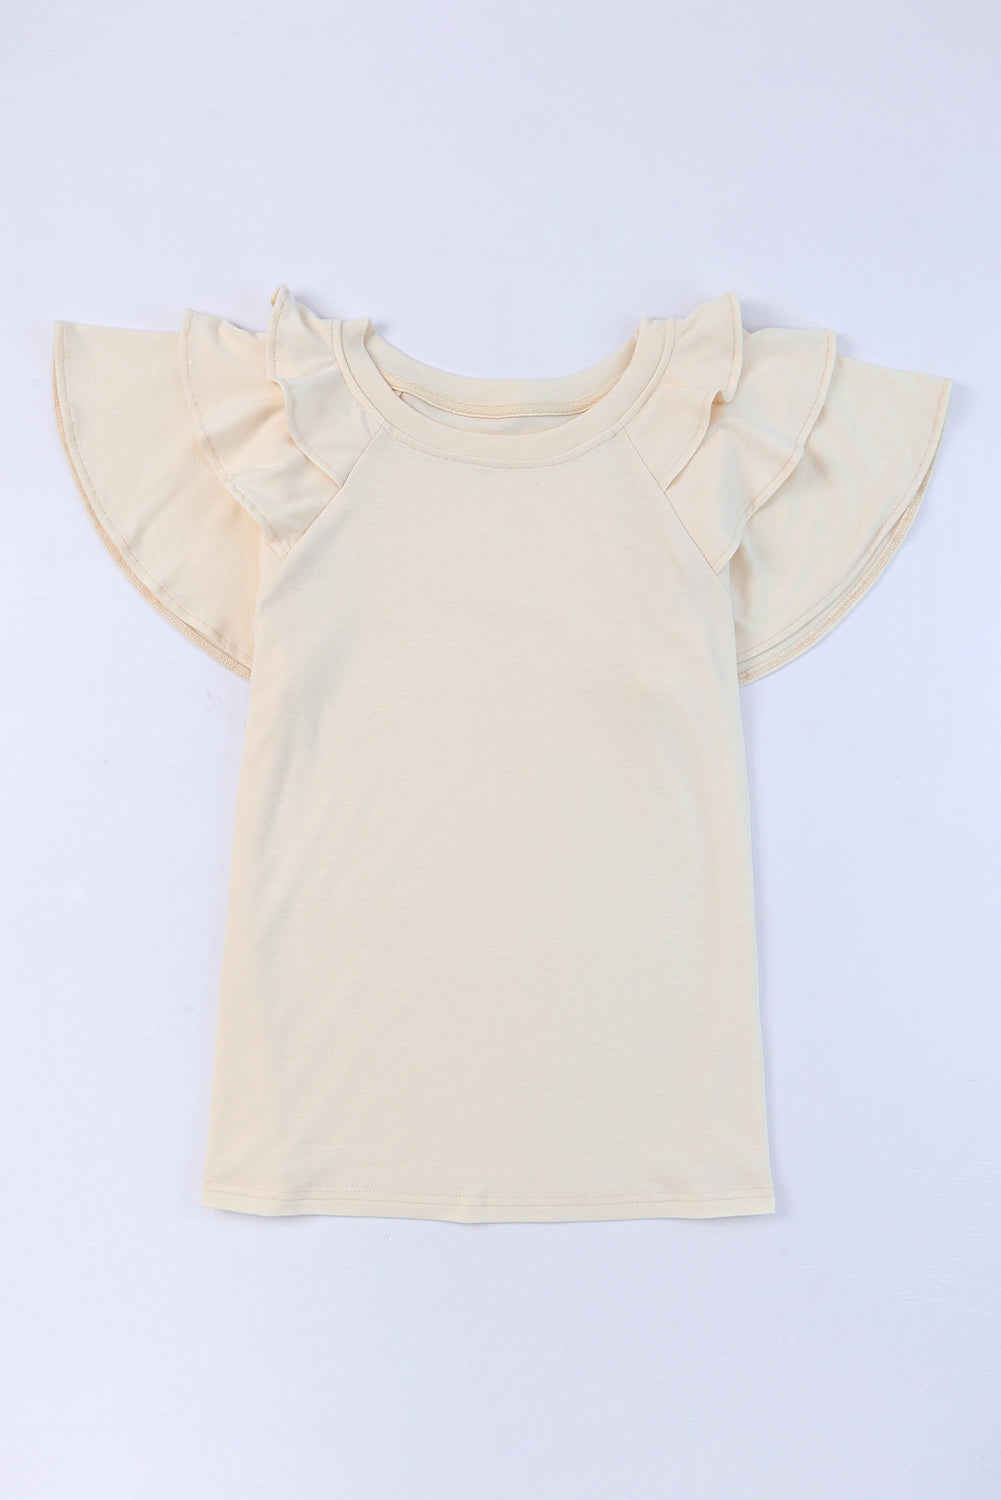 Graues, einfarbiges, kurzärmliges T-Shirt mit Rüschen